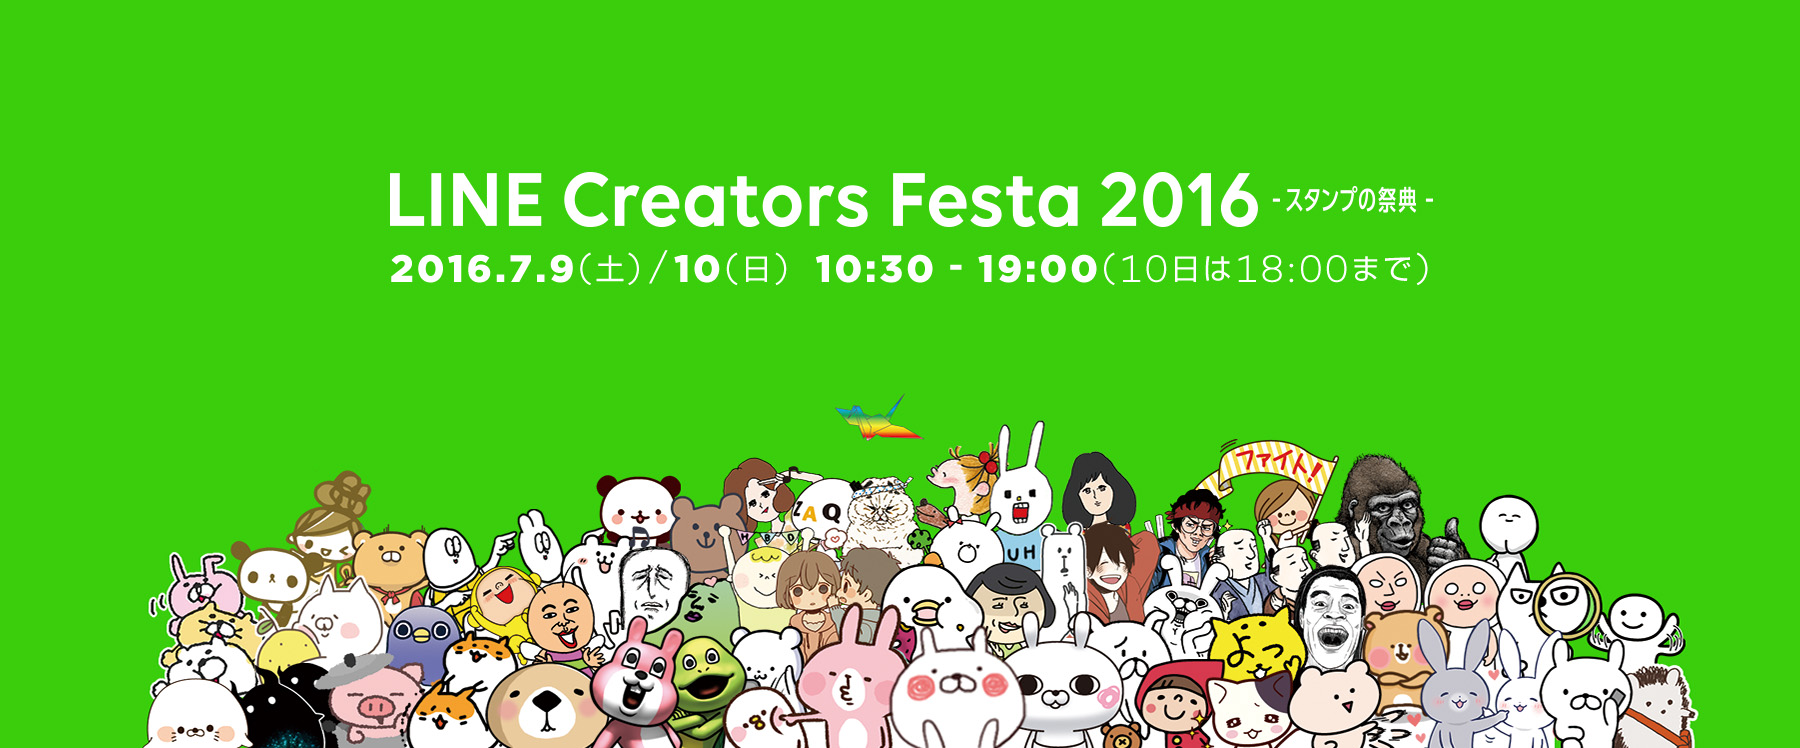 うさまるアニメ初公開のline Creators Festa16 カナヘイ ポテ豆など有名クリエイターも来場予定 スマホクラブ